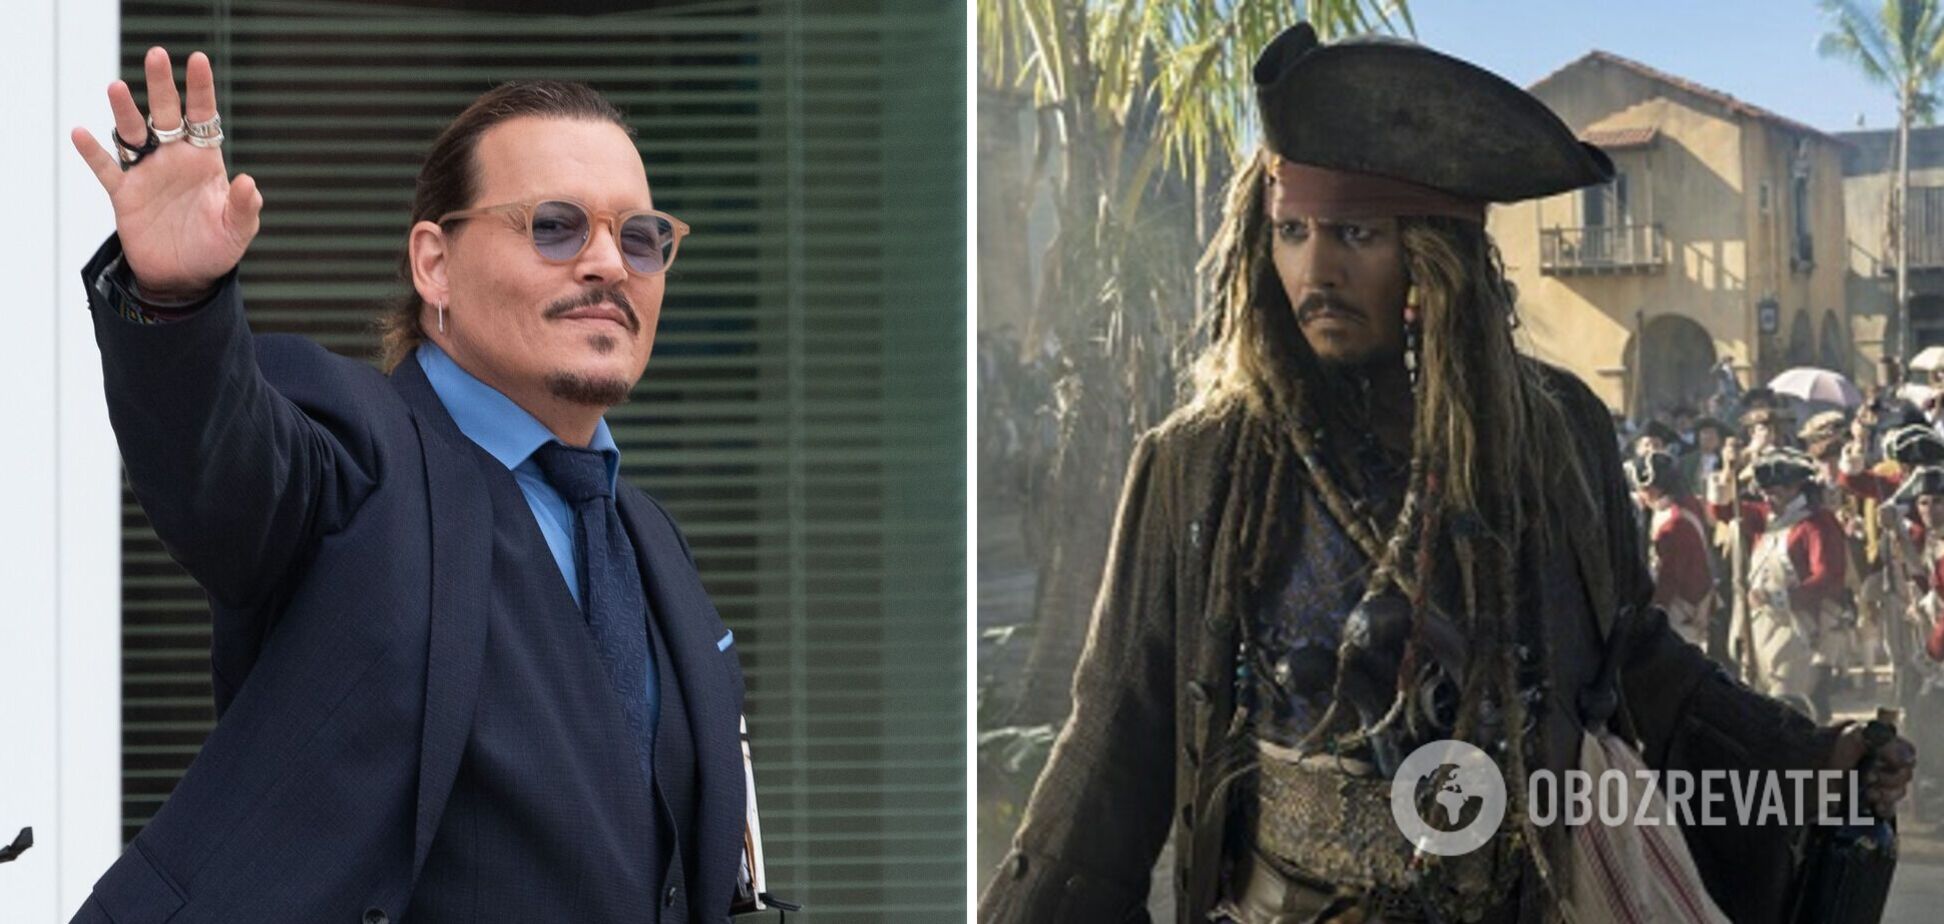 Джонни Депп снимется в новой части 'Пиратов Карибского моря' – СМИ